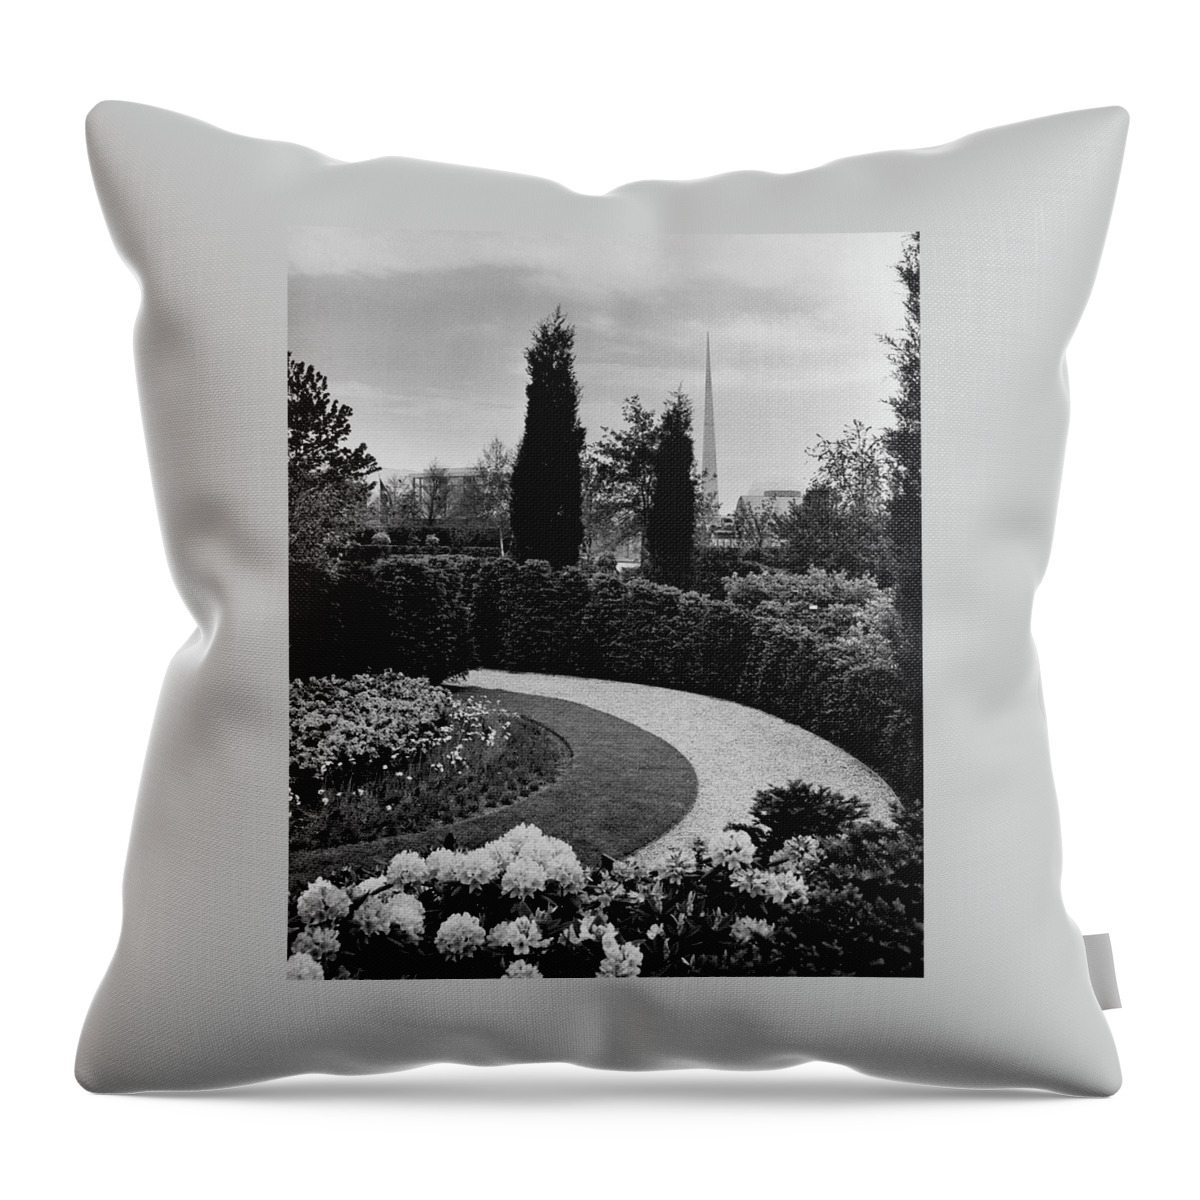 A Bobbink & Atkins Garden Throw Pillow